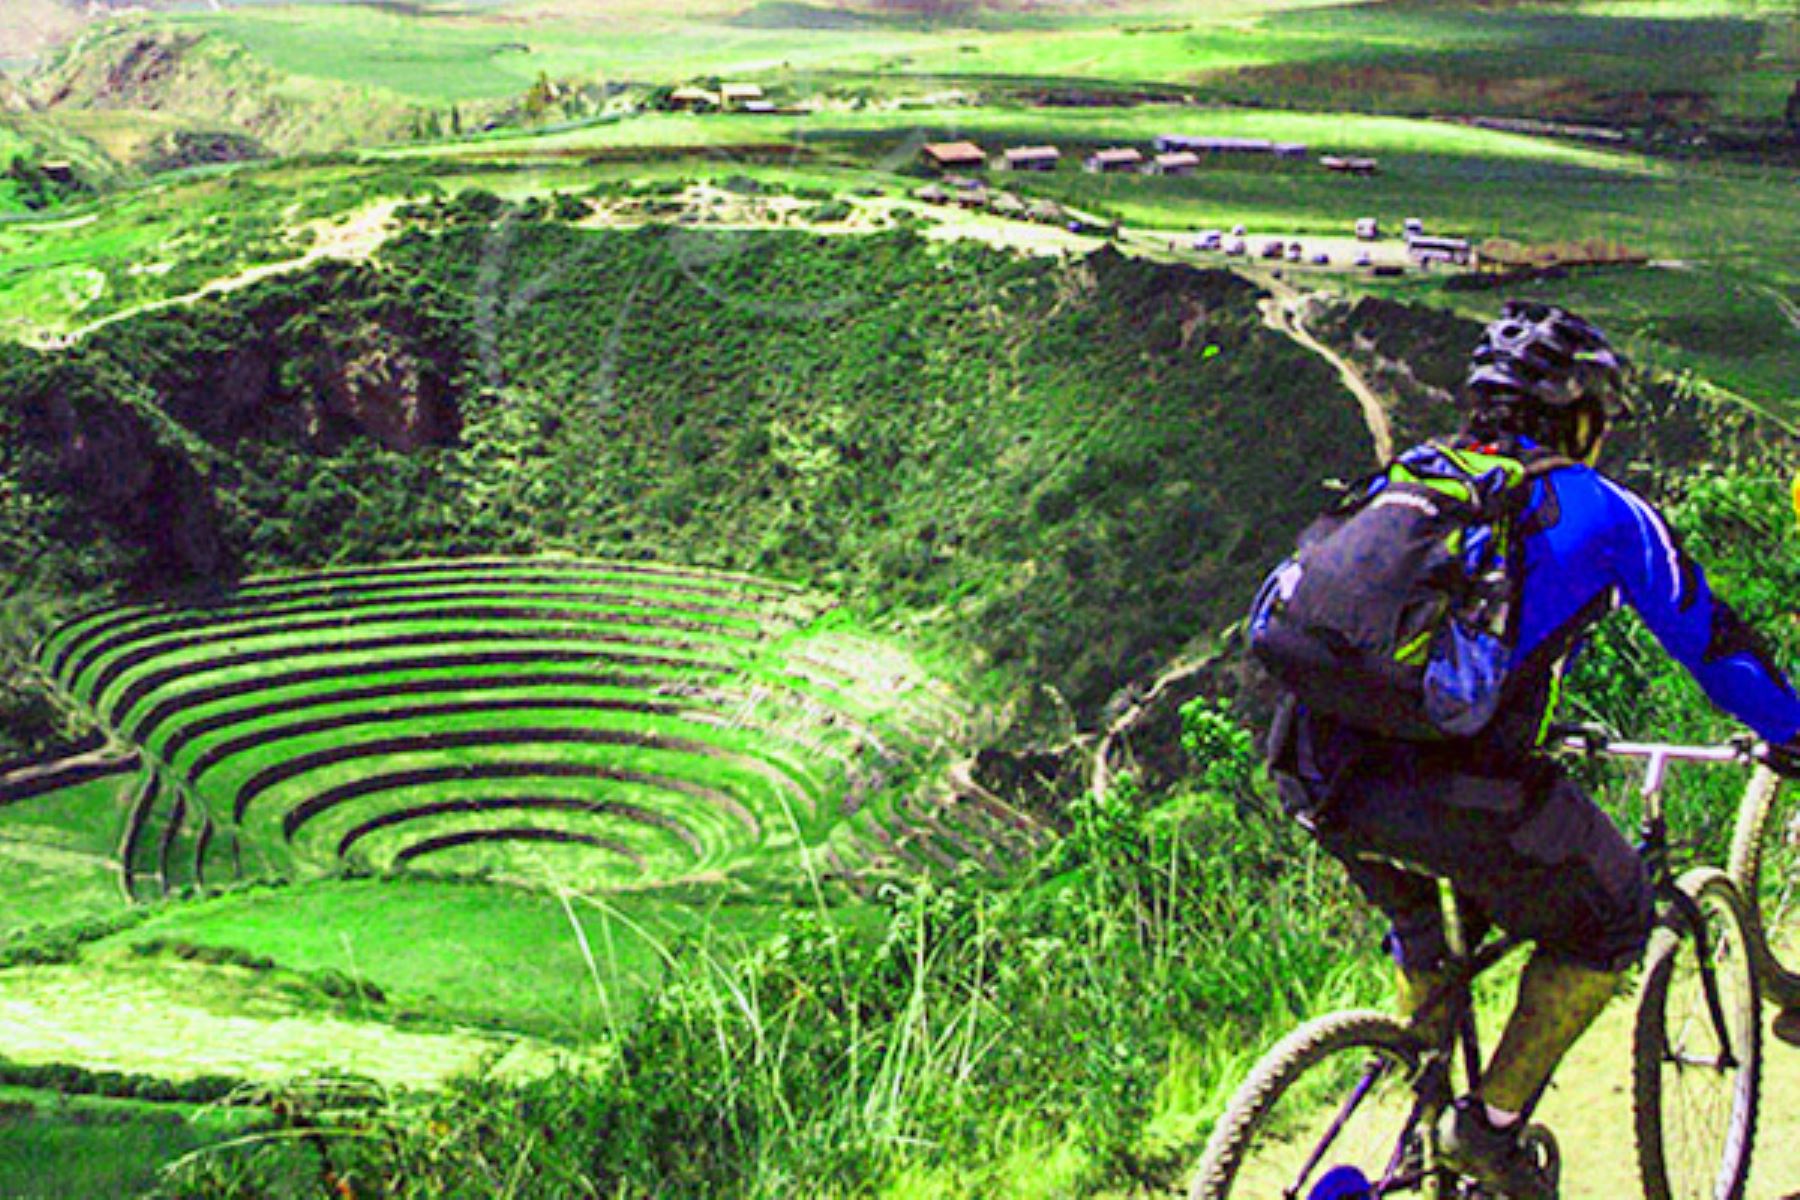 El Qhapaq Ñan o Camino Inca, en el tramo que atraviesa el Valle Sagrado en la región Cusco, es considerado una de las rutas más cautivadoras en el mundo para el turismo en bicicleta, según destaca la prestigiosa revista de viajes británica "Wanderlust".